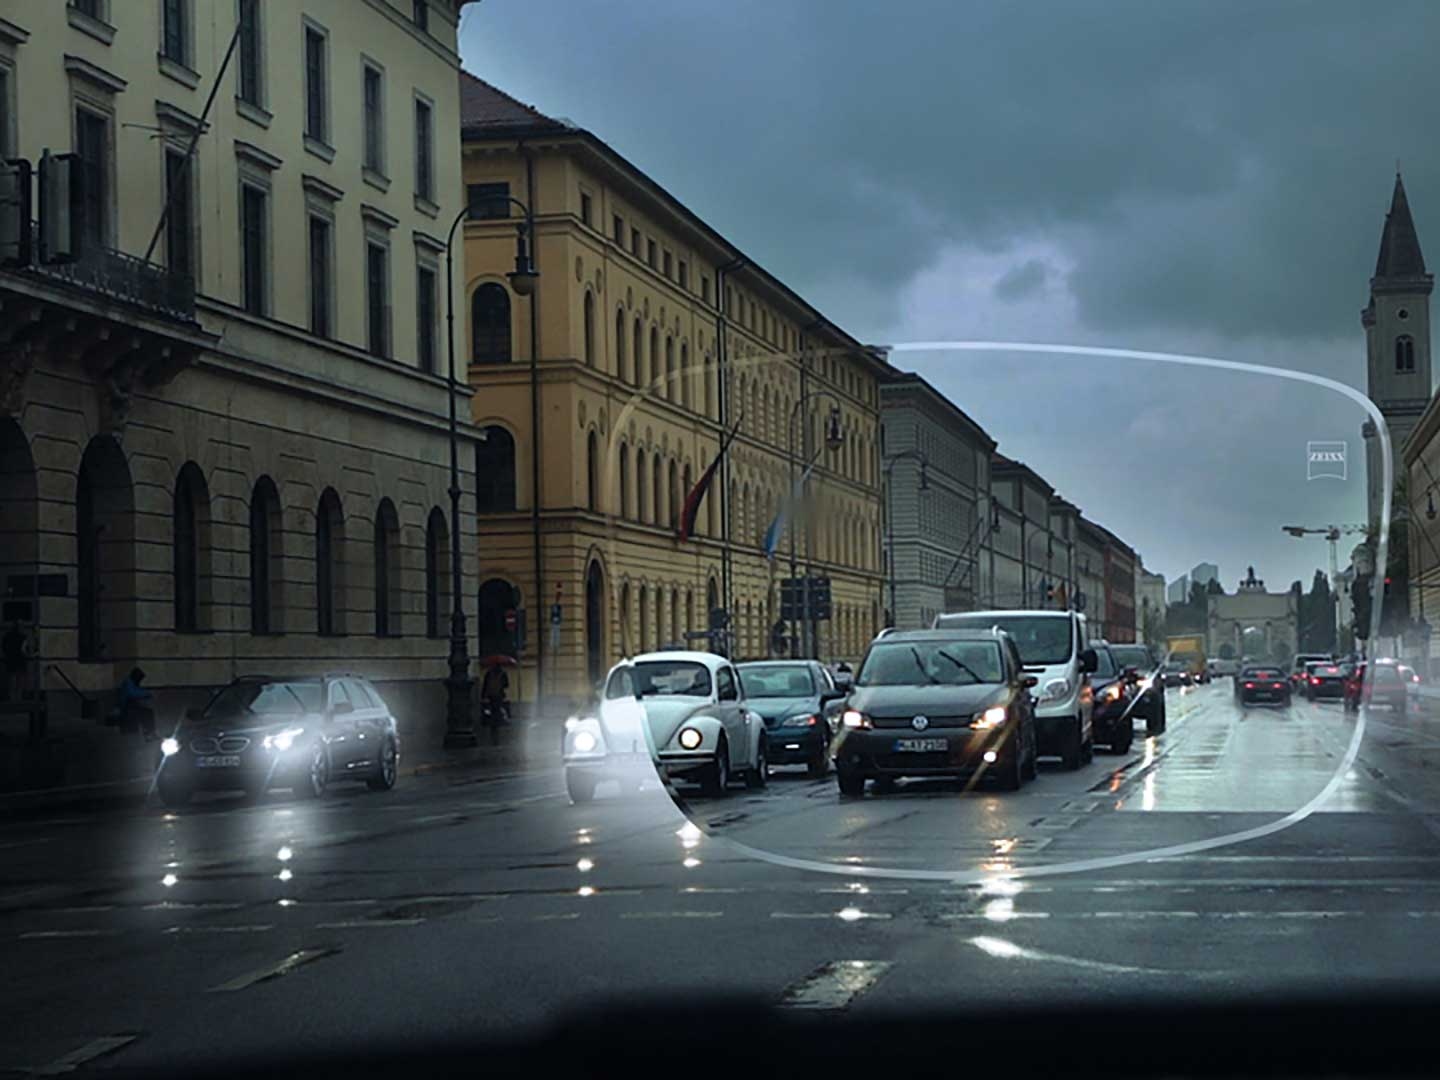 L’image montre une mauvaise visibilité dans des conditions de faible luminosité dans une rue. Le point de vue est l’intérieur d’une voiture vu à travers un verre de lunettes. 